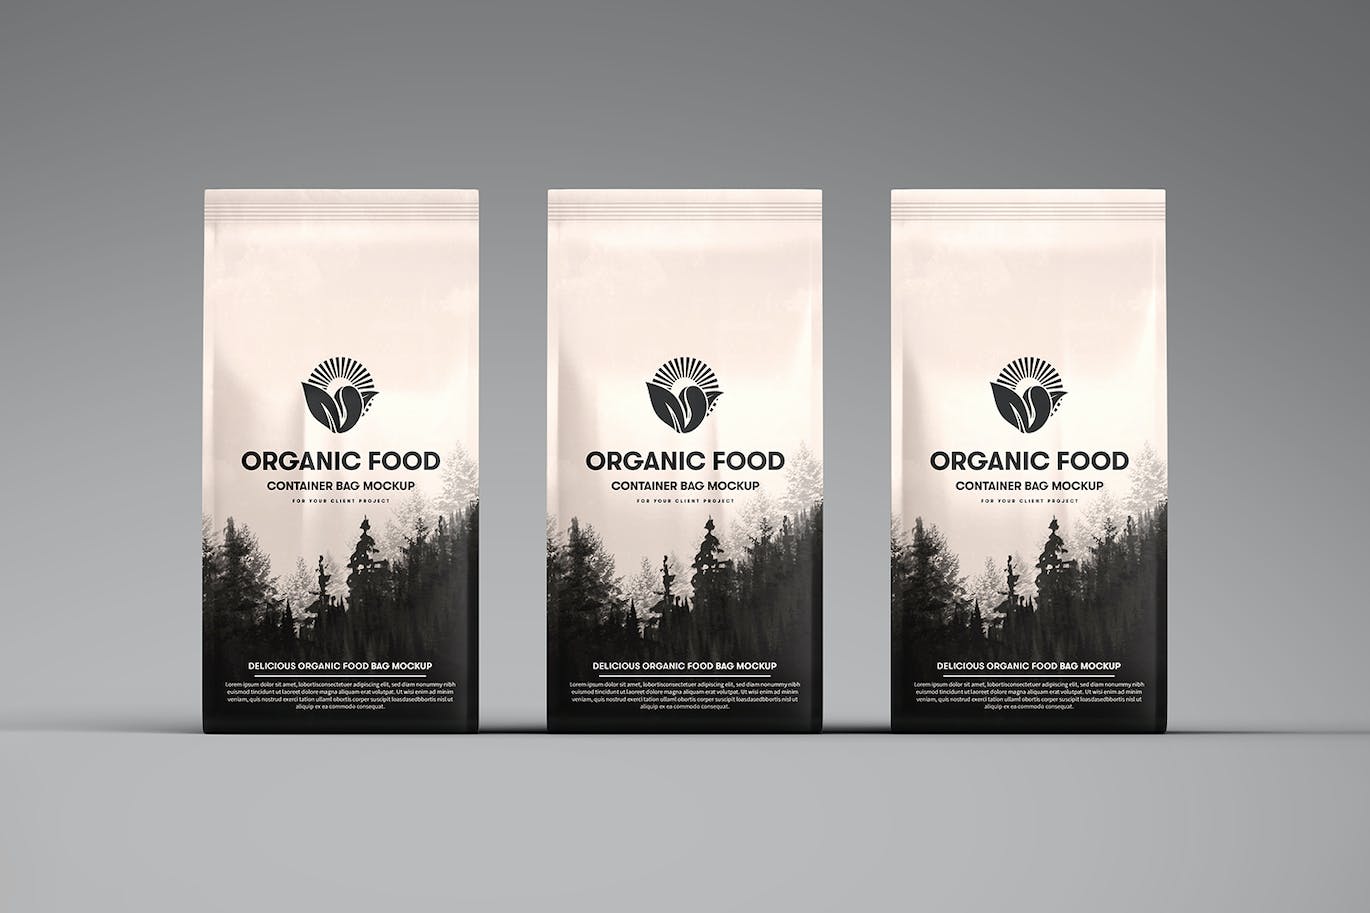 有机食品容器包装袋样机 Organic Food Container Packaging Bag Mockup